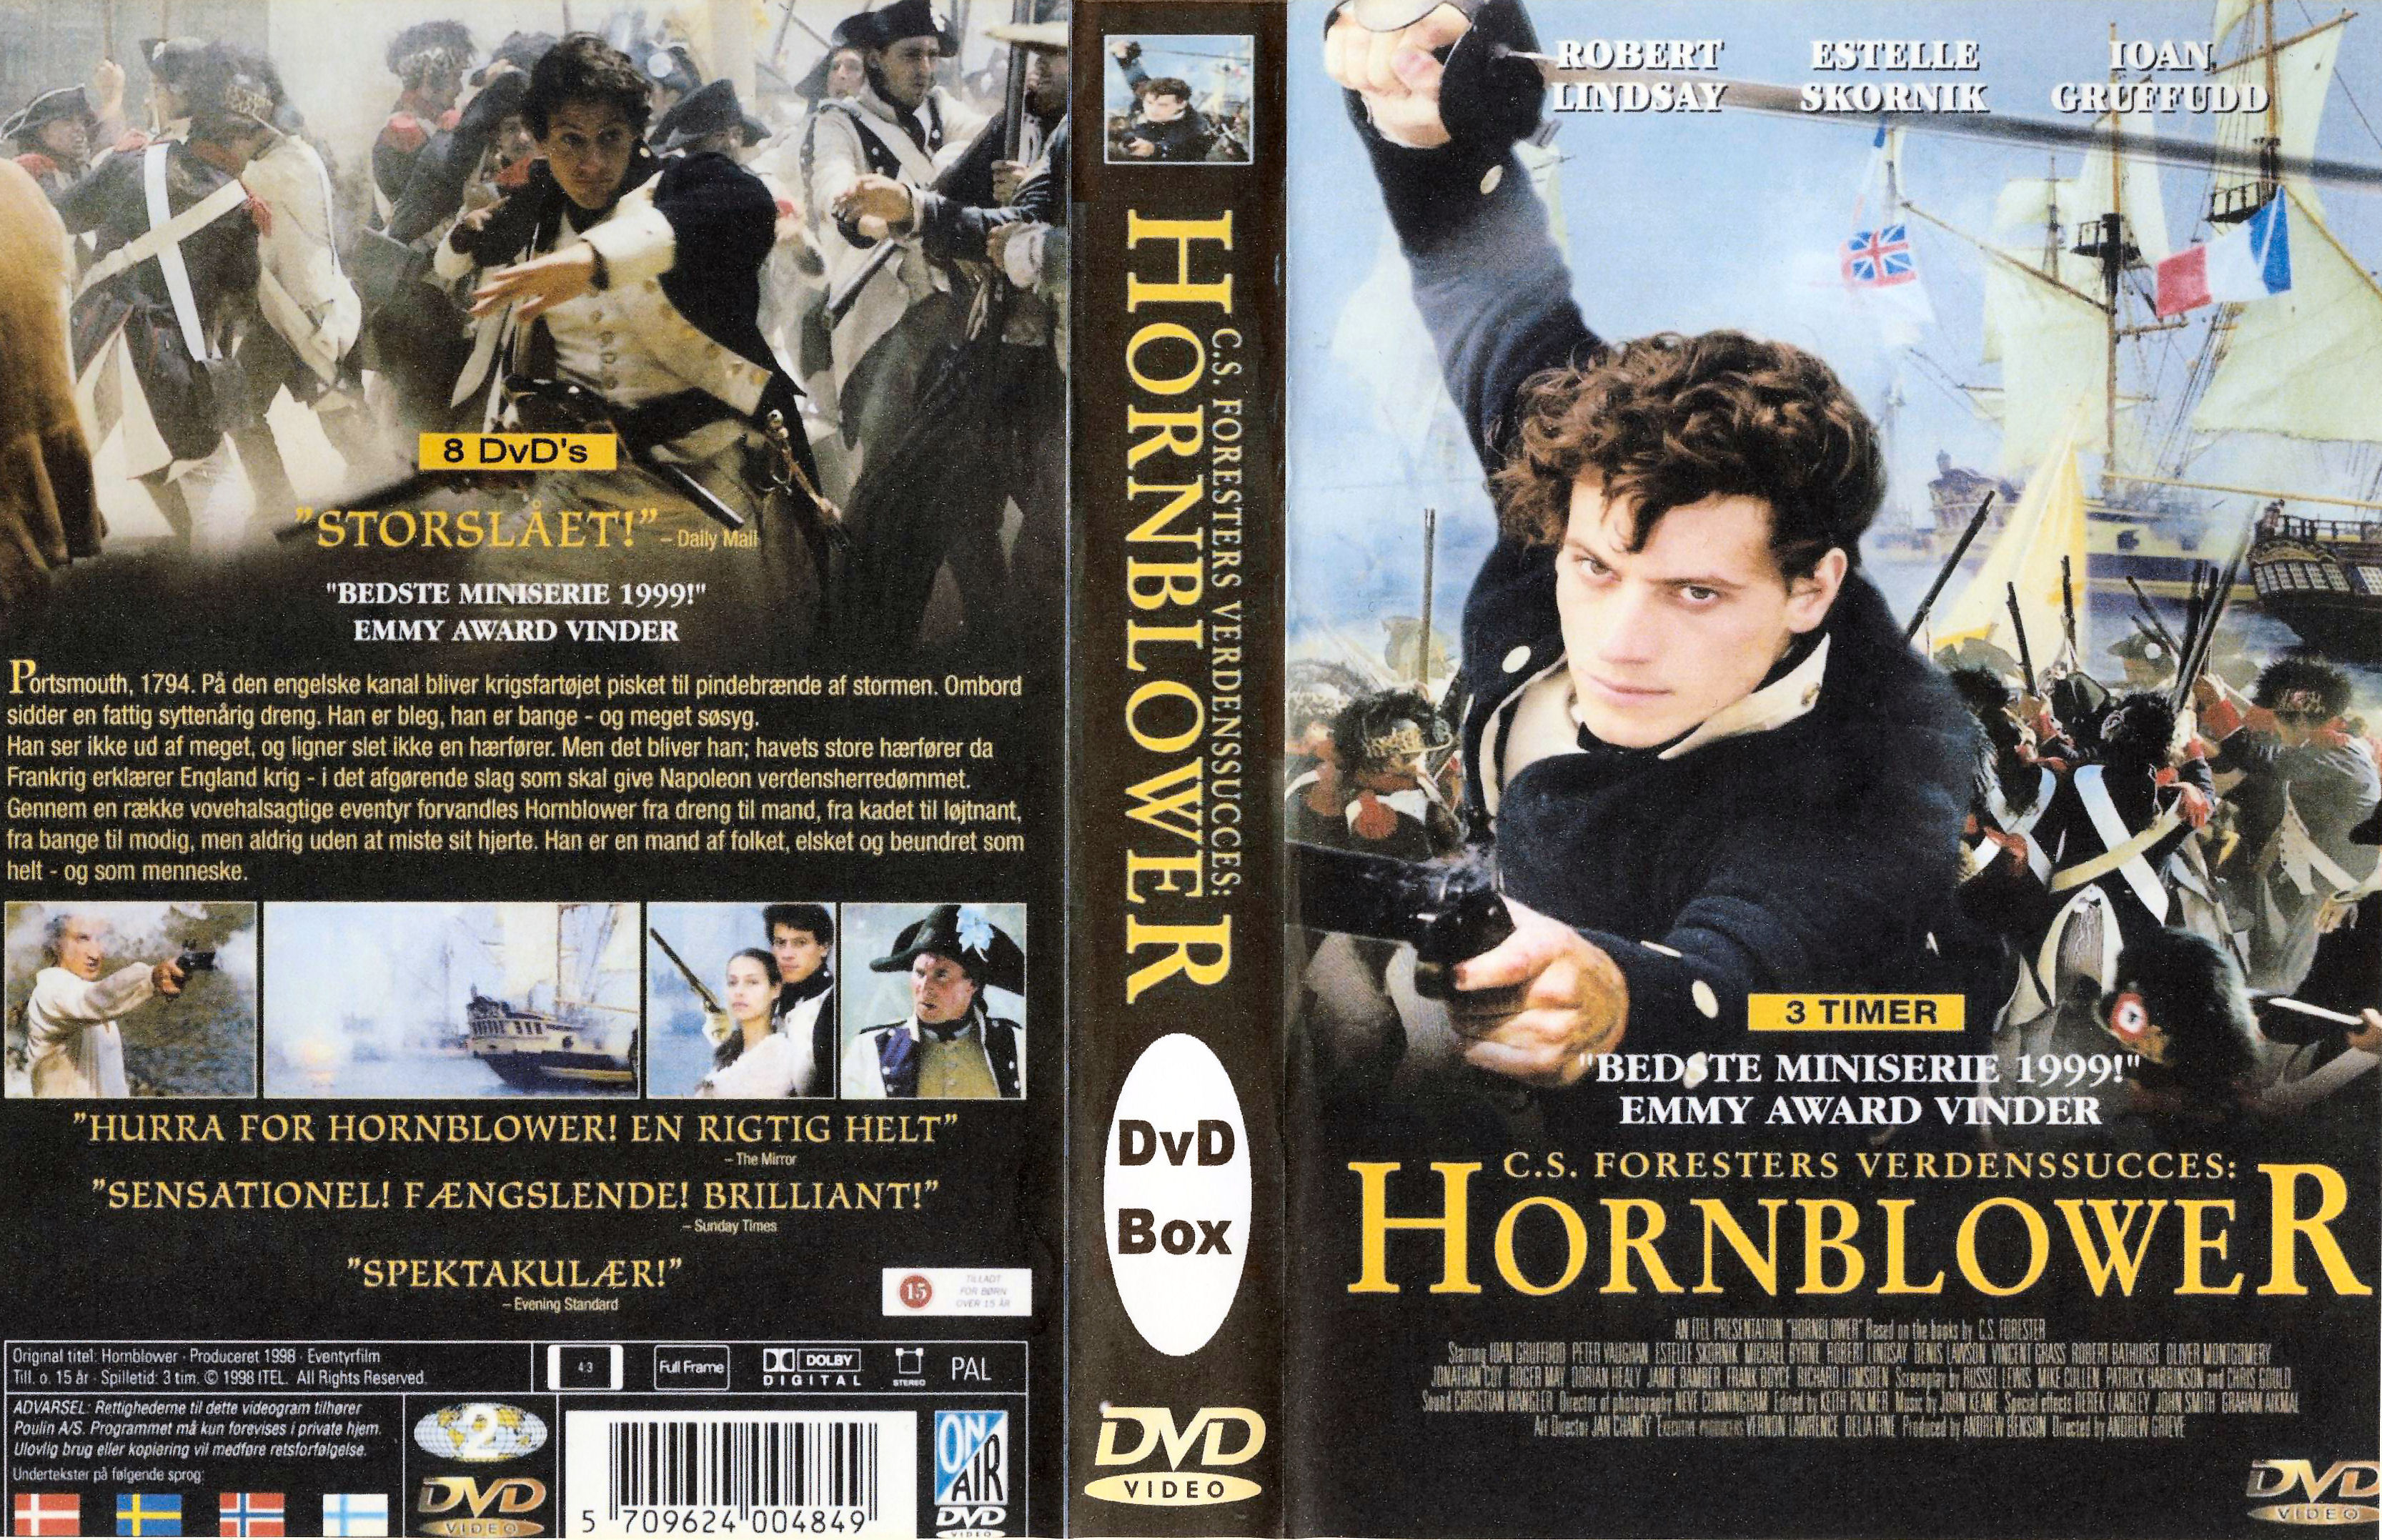 Hornblower Miniserie 1999 - DvD 8 Finale